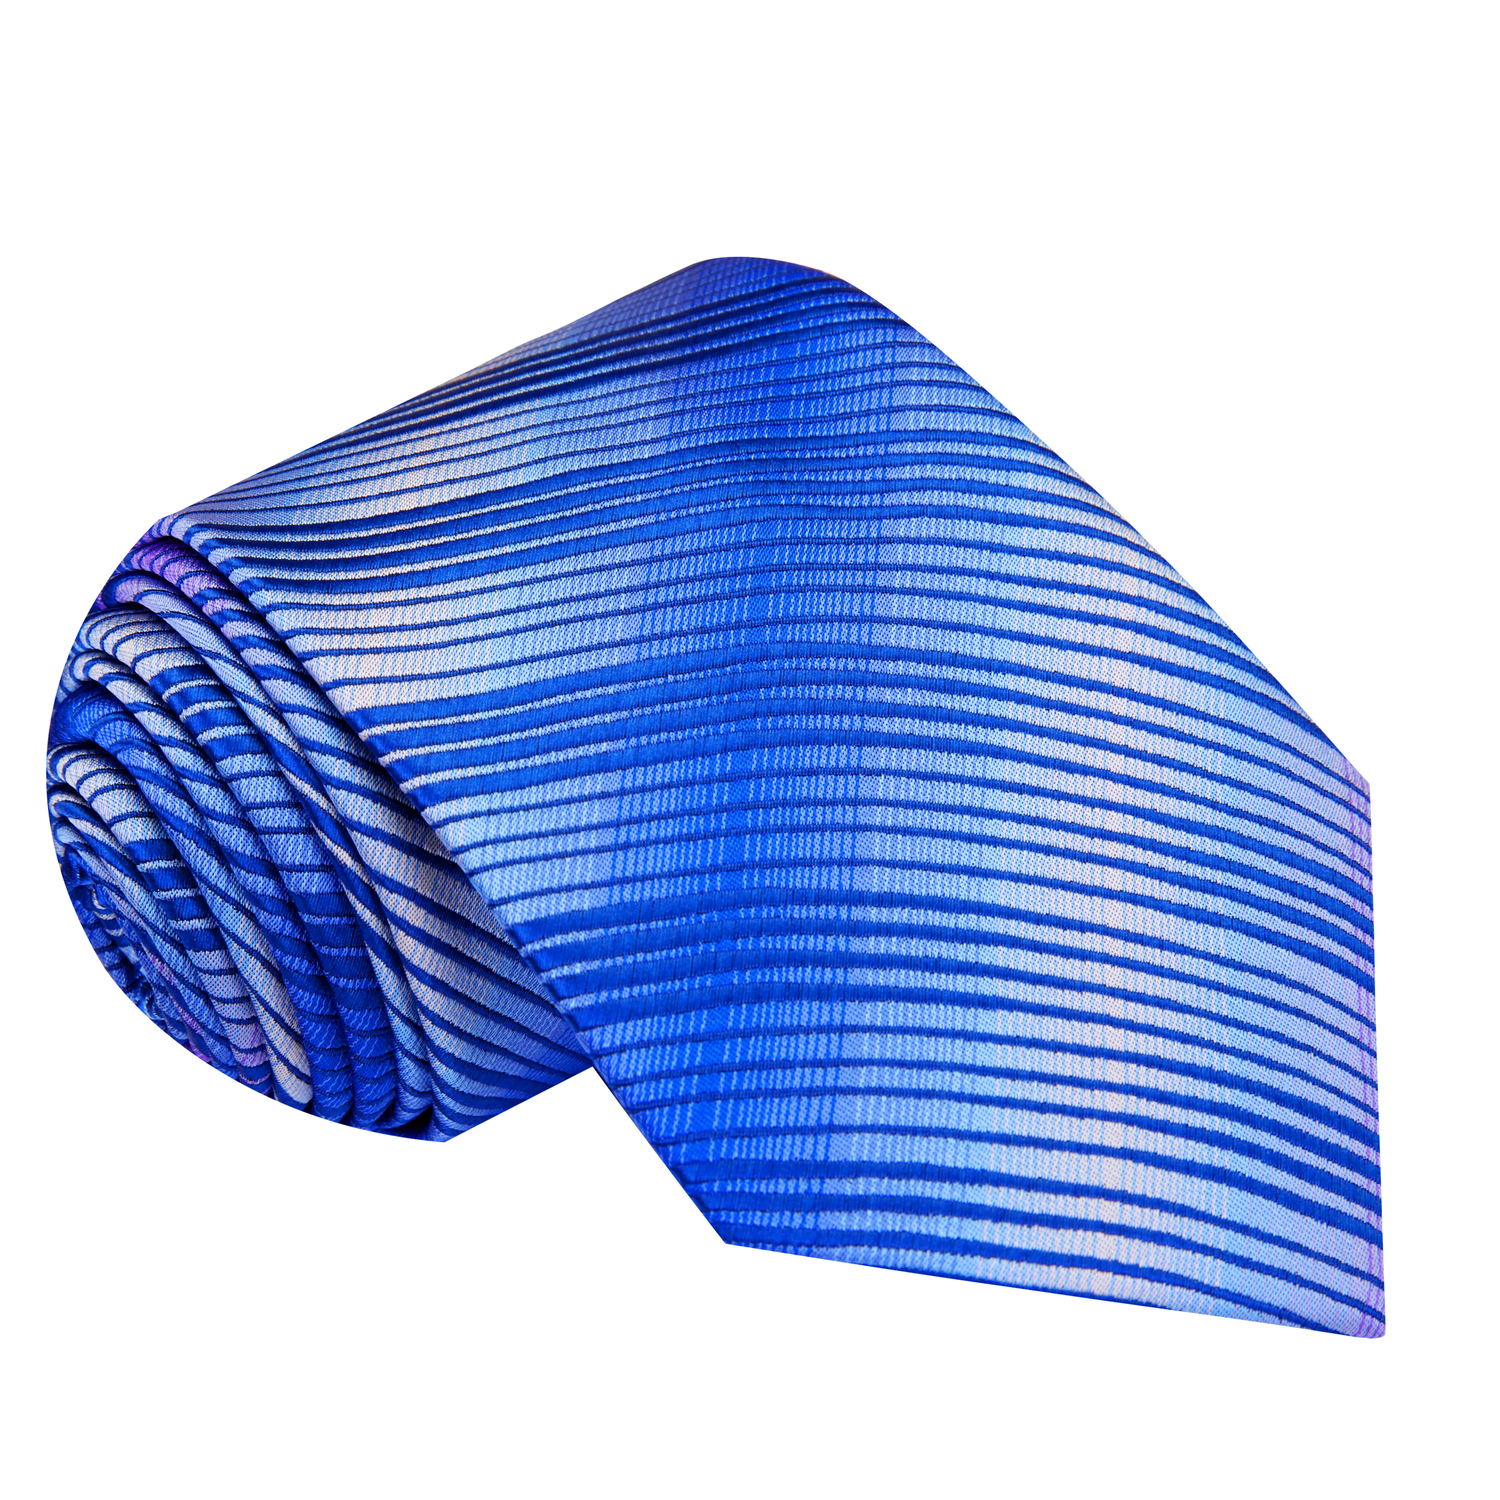 A Blue, Light Blue, Purple Color Abstract Wavy Swirl Pattern Silk Necktie